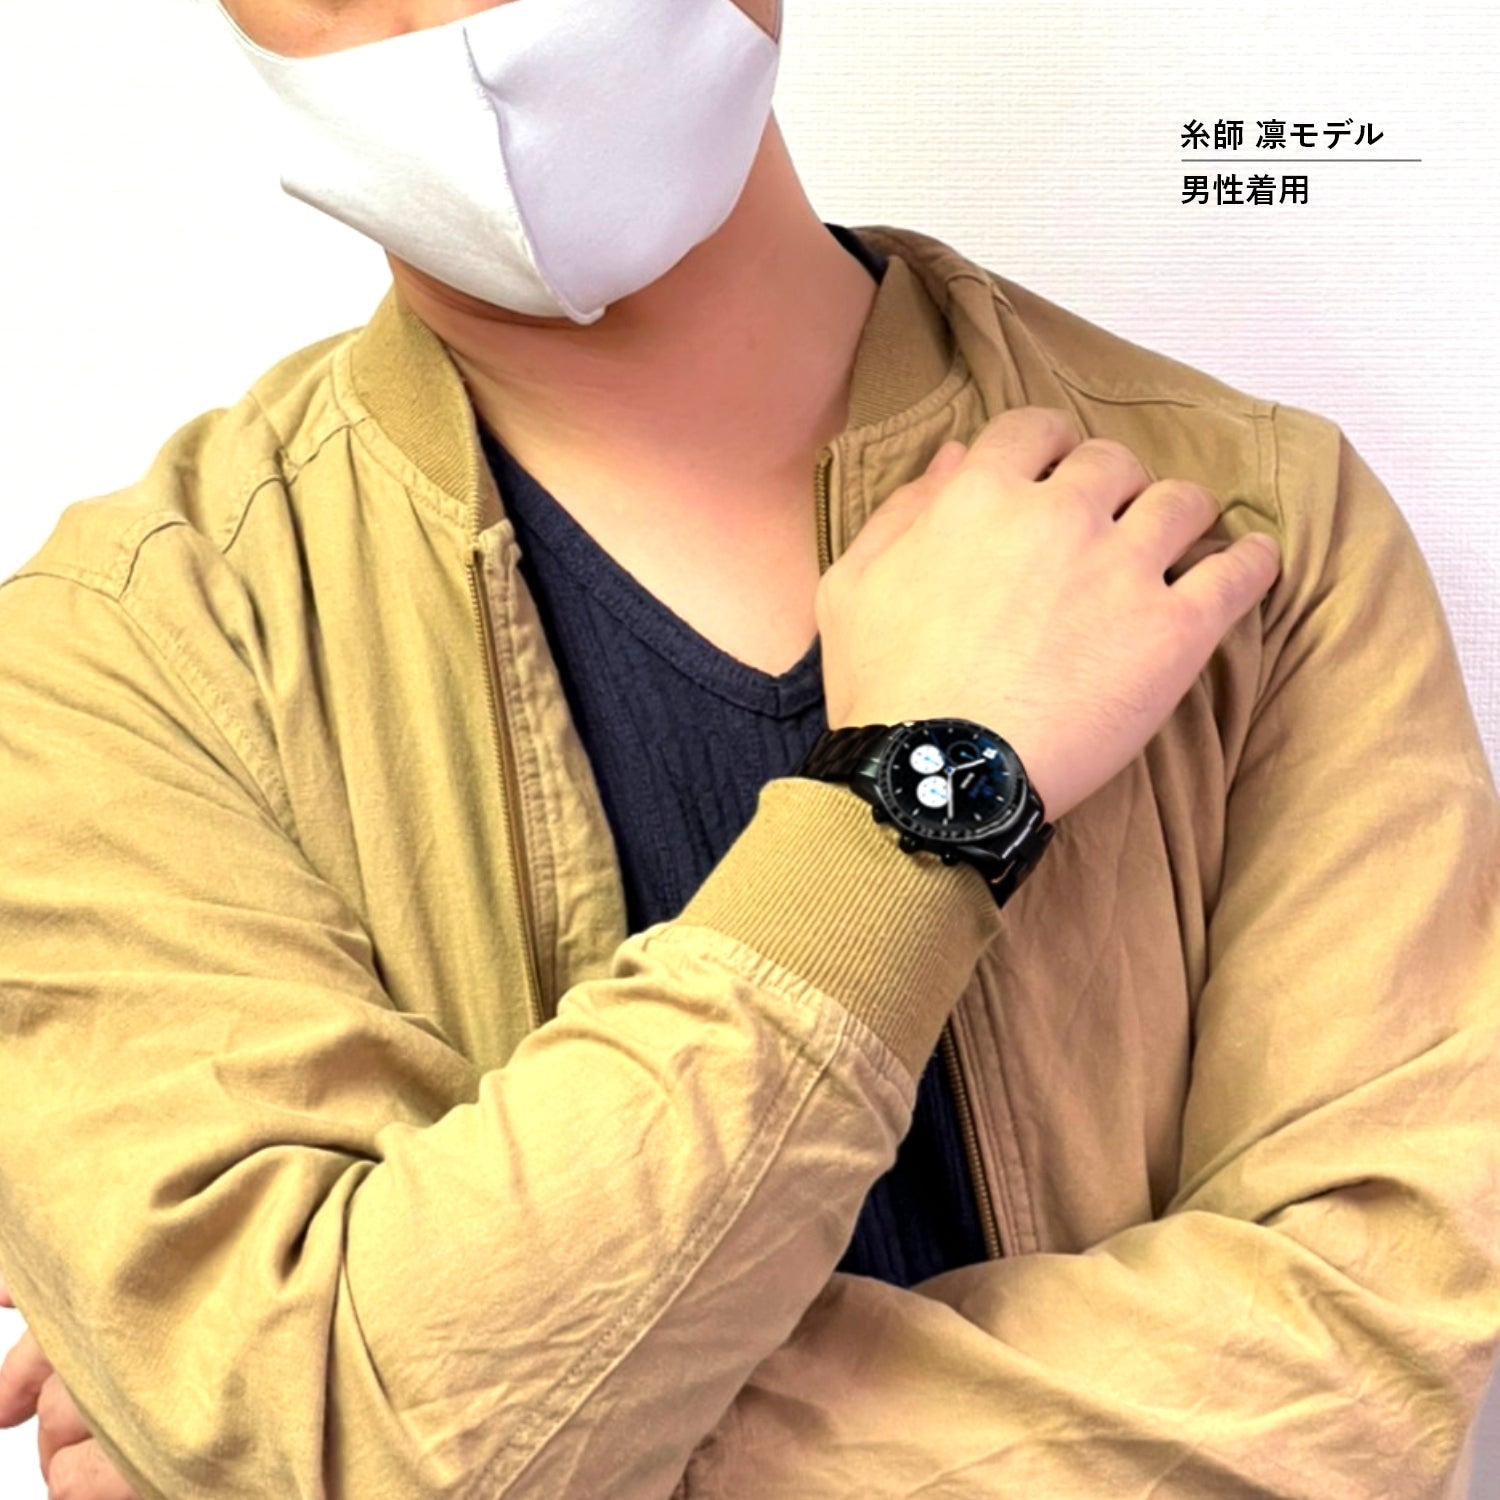 テレビアニメ「ブルーロック」オフィシャルクロノグラフ腕時計 潔 世一 - 公式通販サイト「アニメコレクション/Anime Collection」